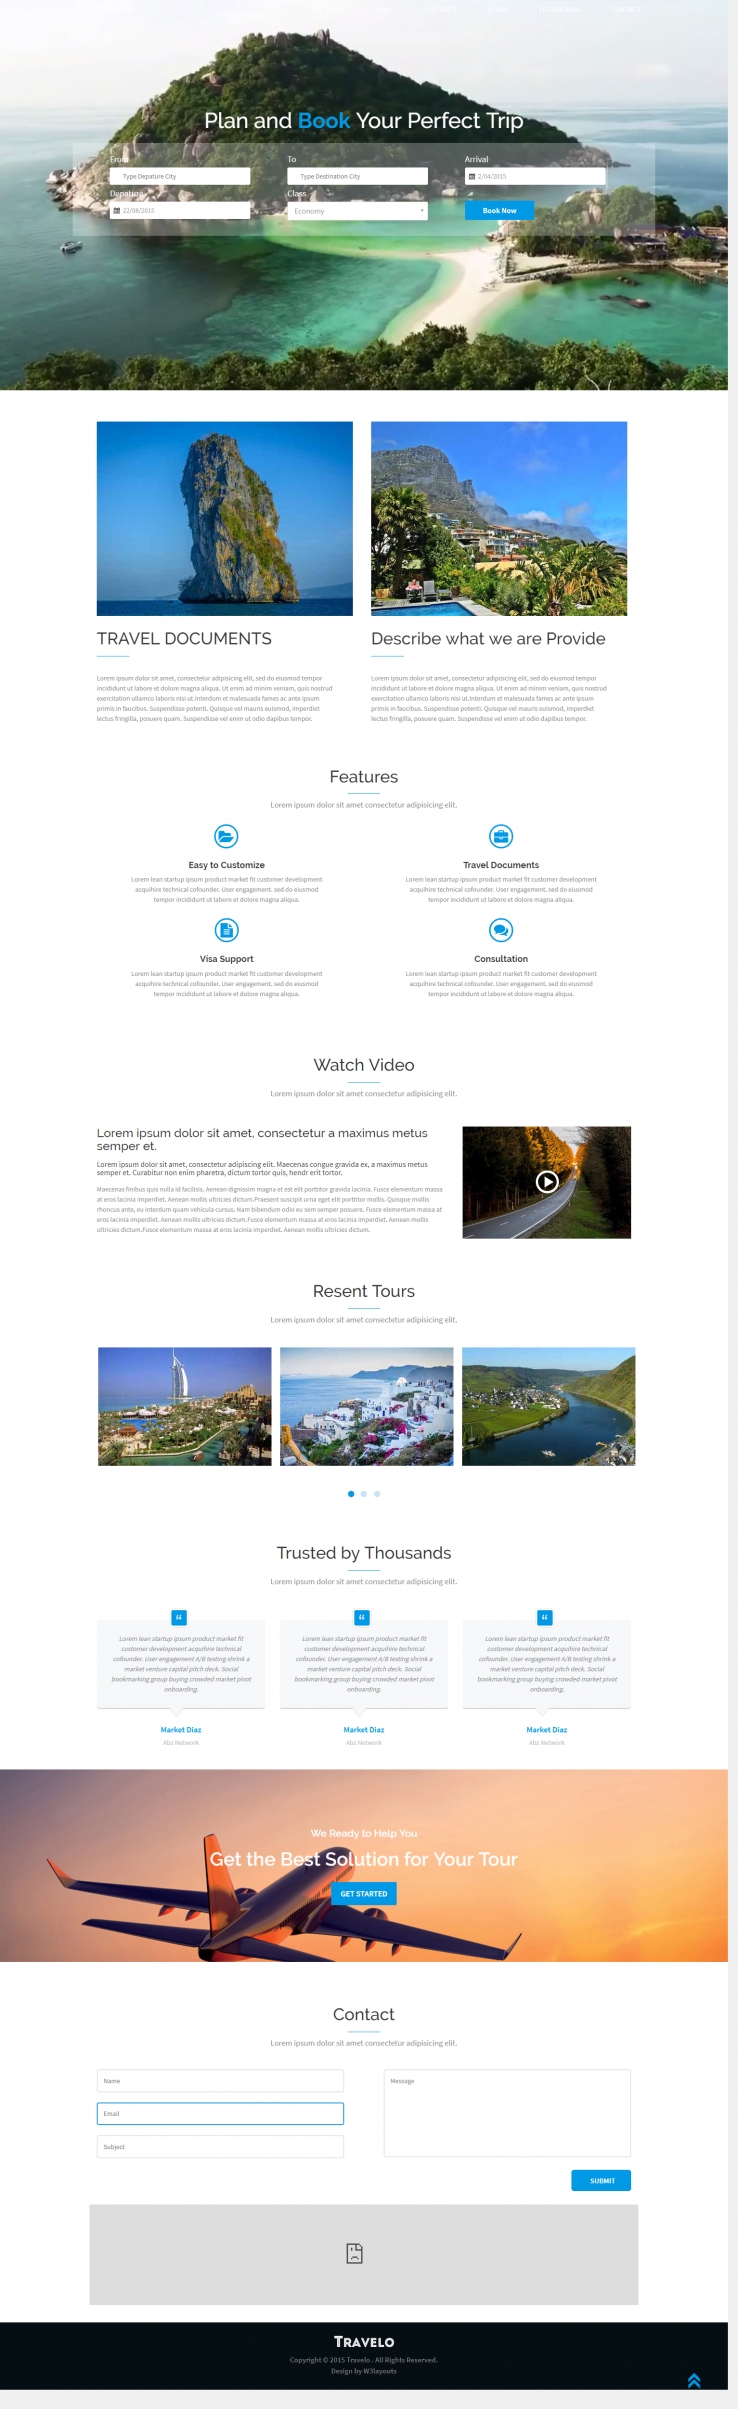 蓝色简洁风格的旅行指南整站网站源码下载